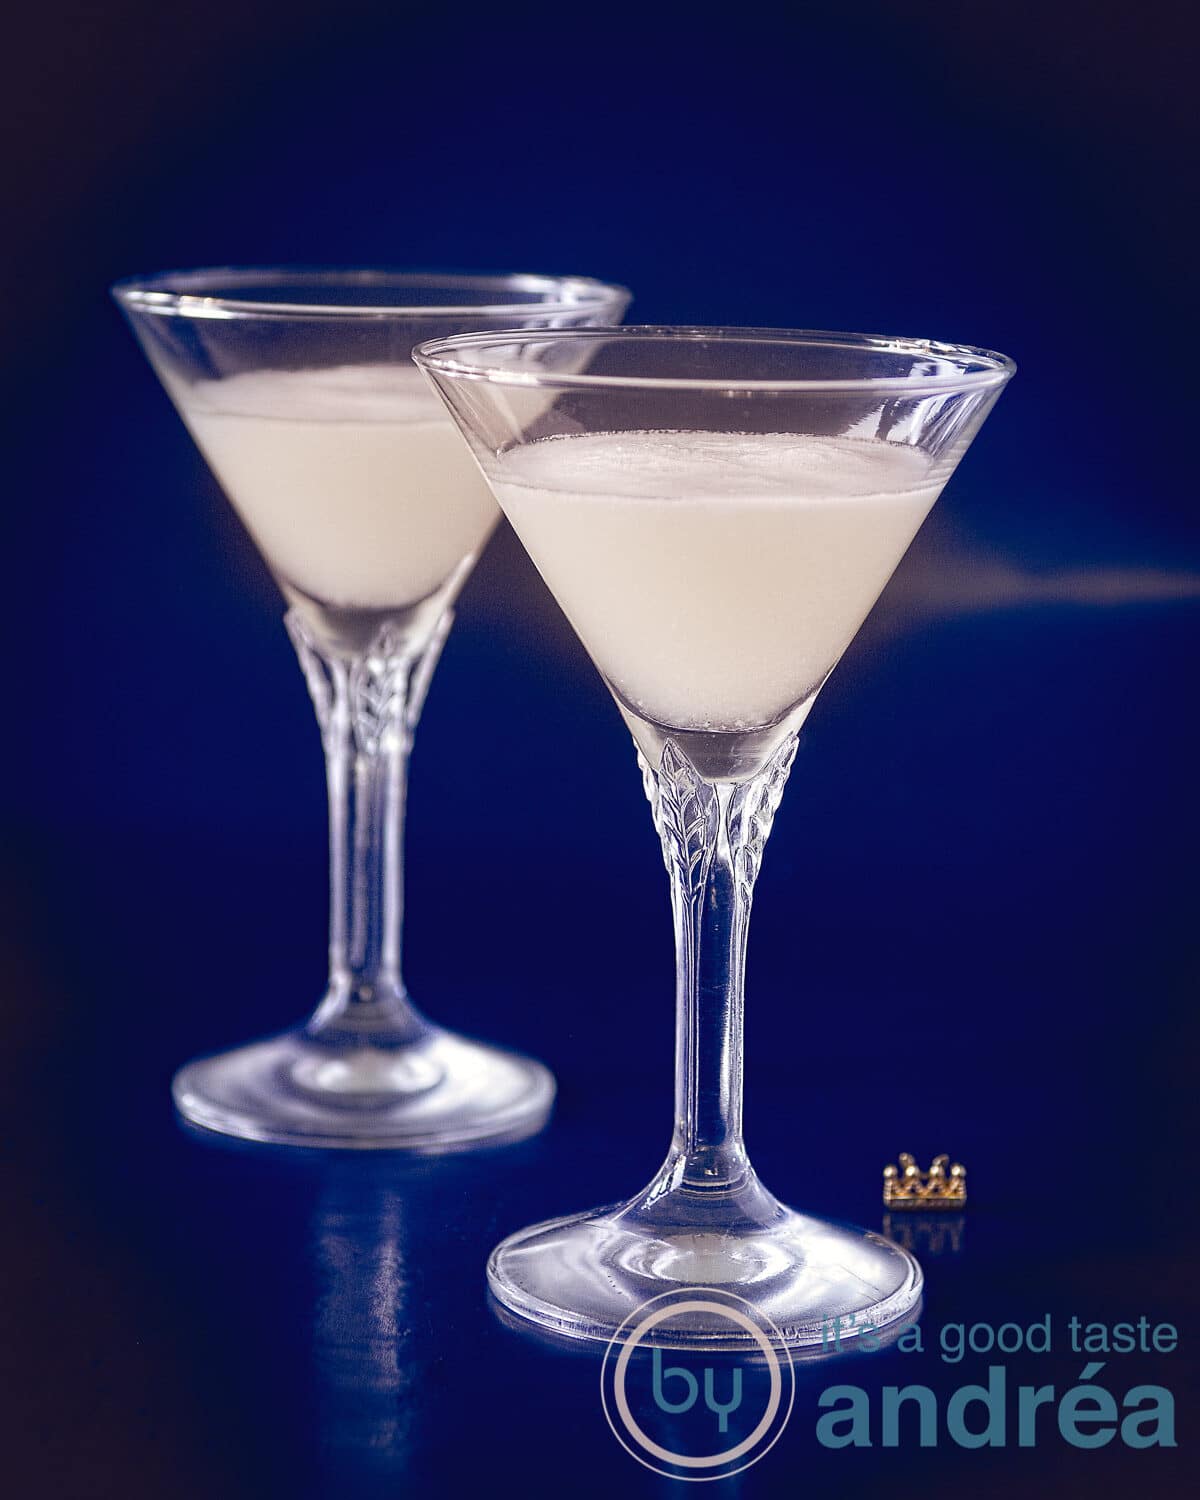 Twee kristallen glazen gevuld met sour sherry cream op een blauwe achtergrond.